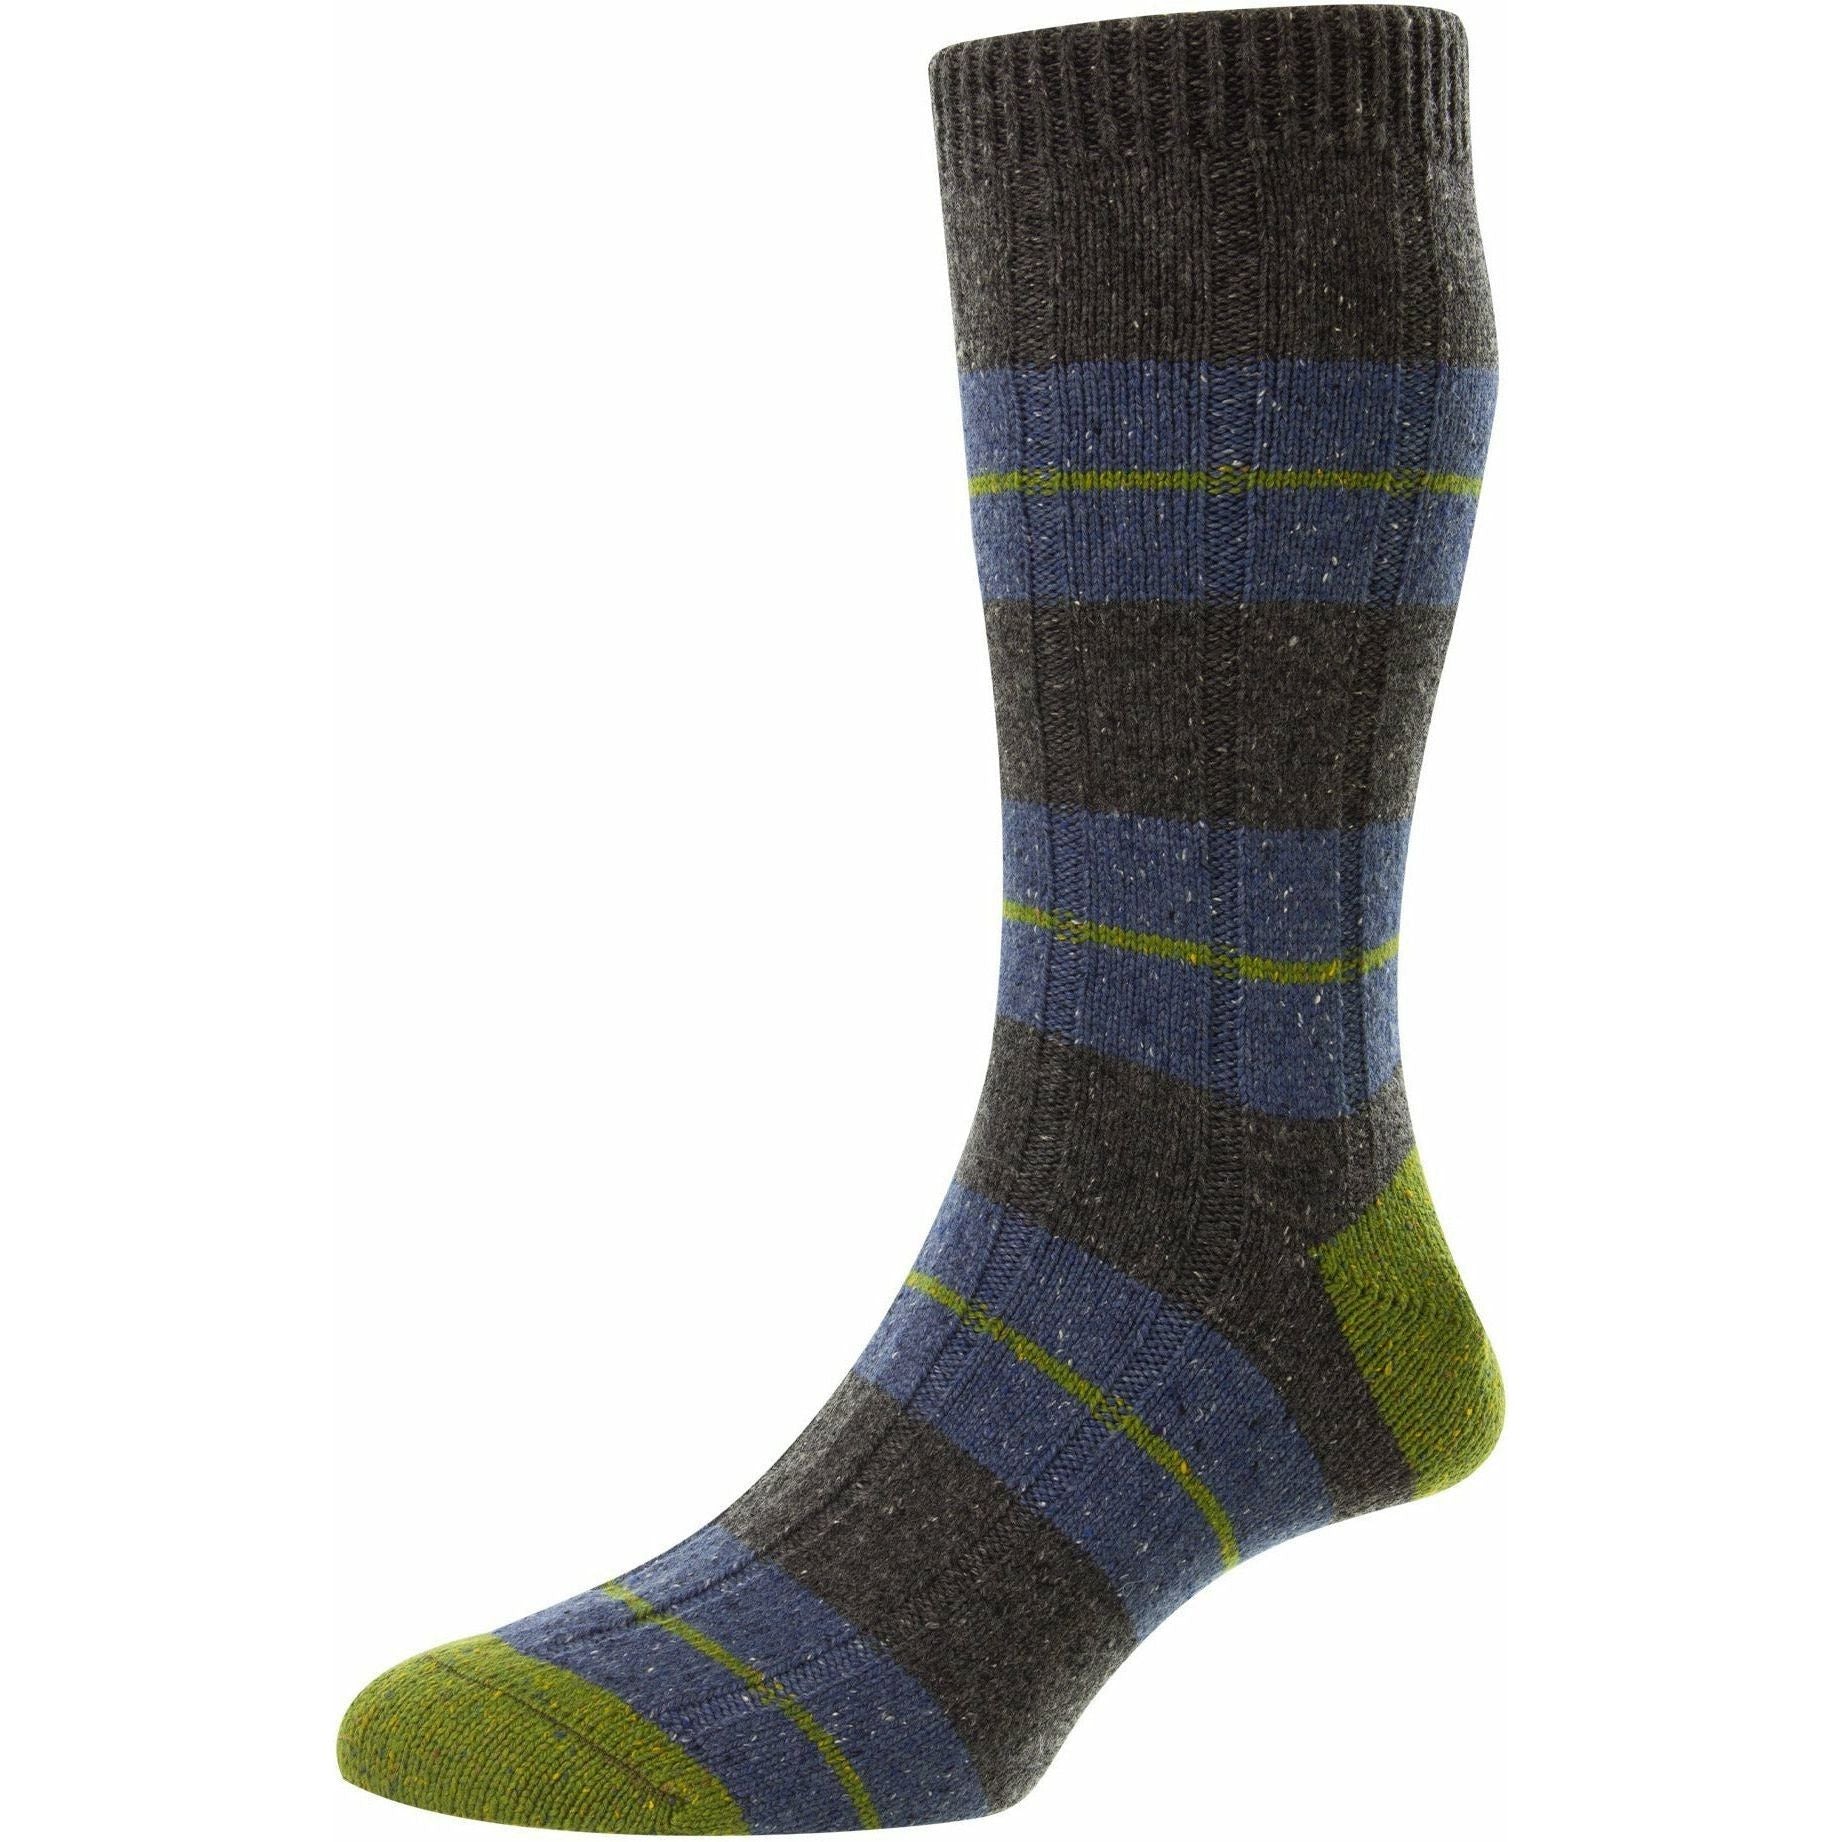 Bayfield Heavy Wool Socks